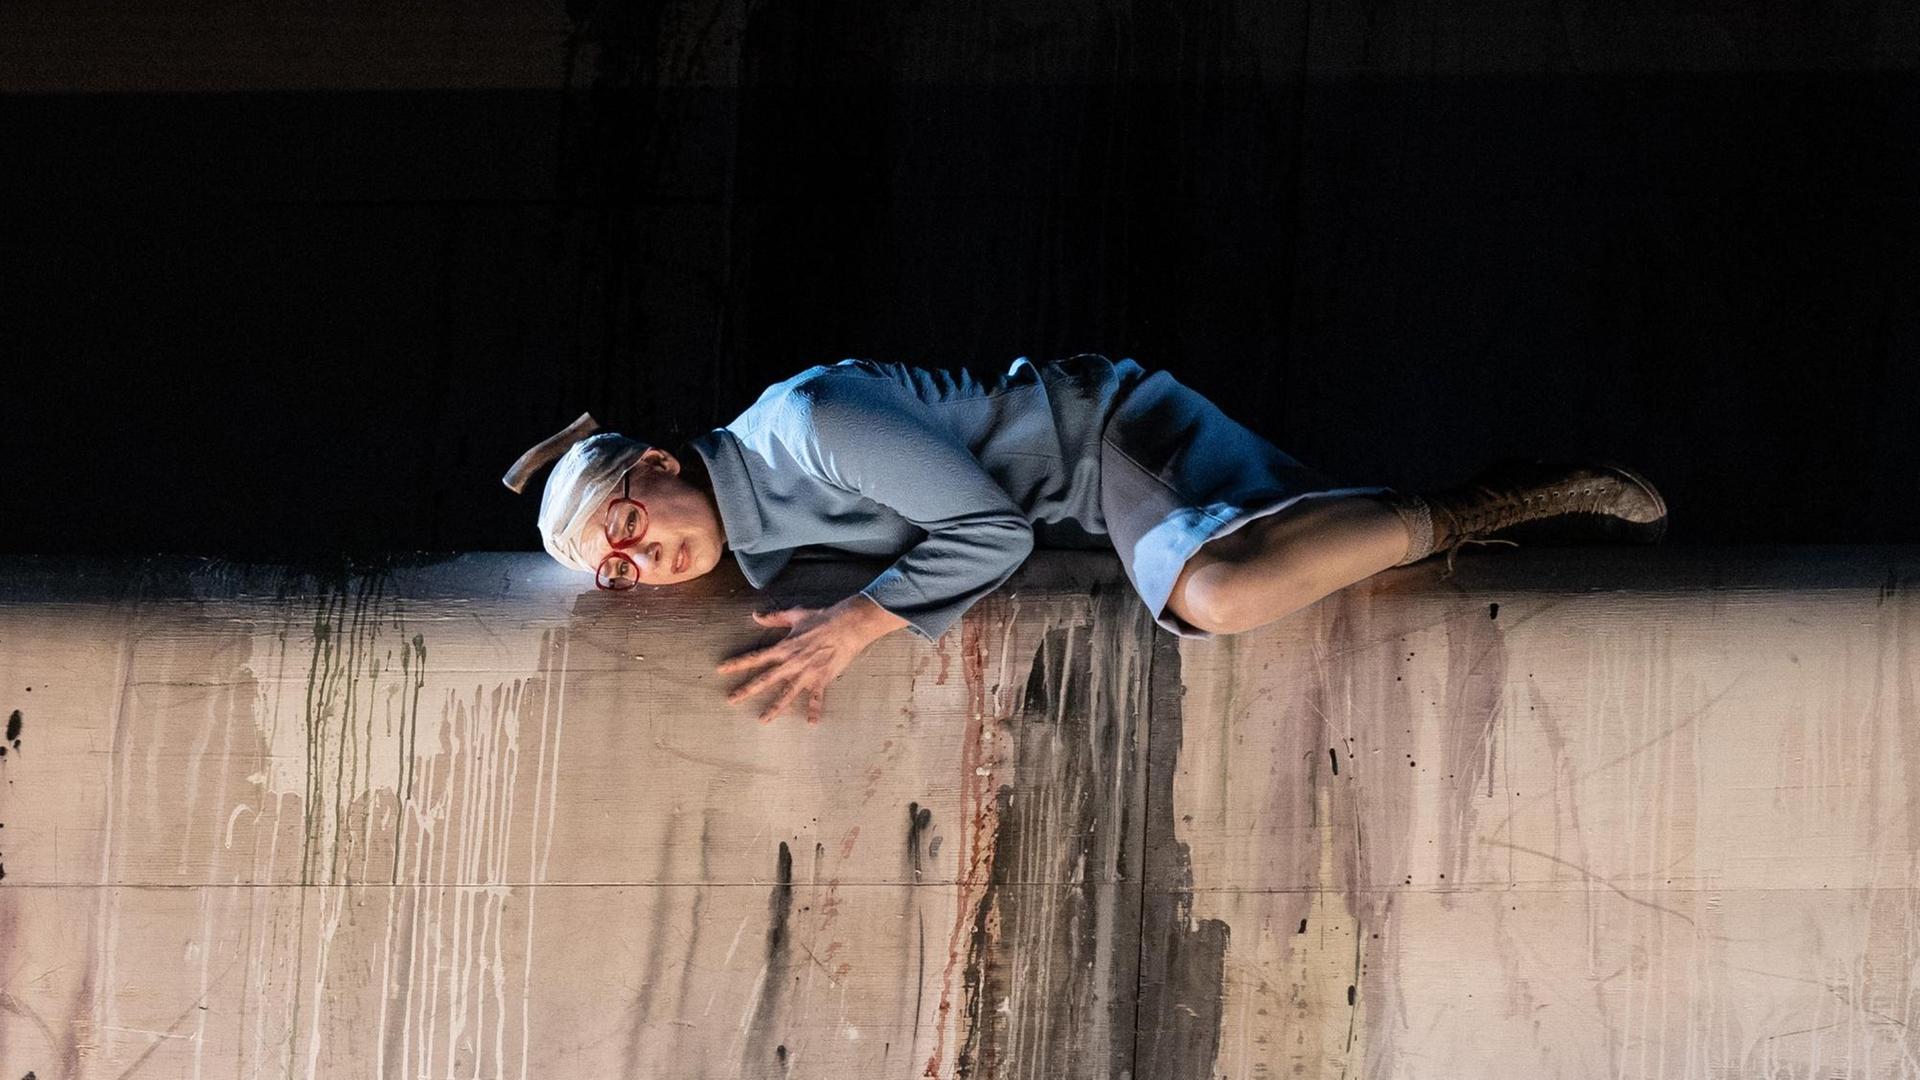 Szenenbild aus der Oper "Toteis" von Manuela Kerer & Matthias Plattner mit Isabel Seebacher als "Viktoria", die bäuchlings vor einem schwarzen Hintergrund auf einer grauen Mauer liegt und einen Verband um den Kopf trägt.